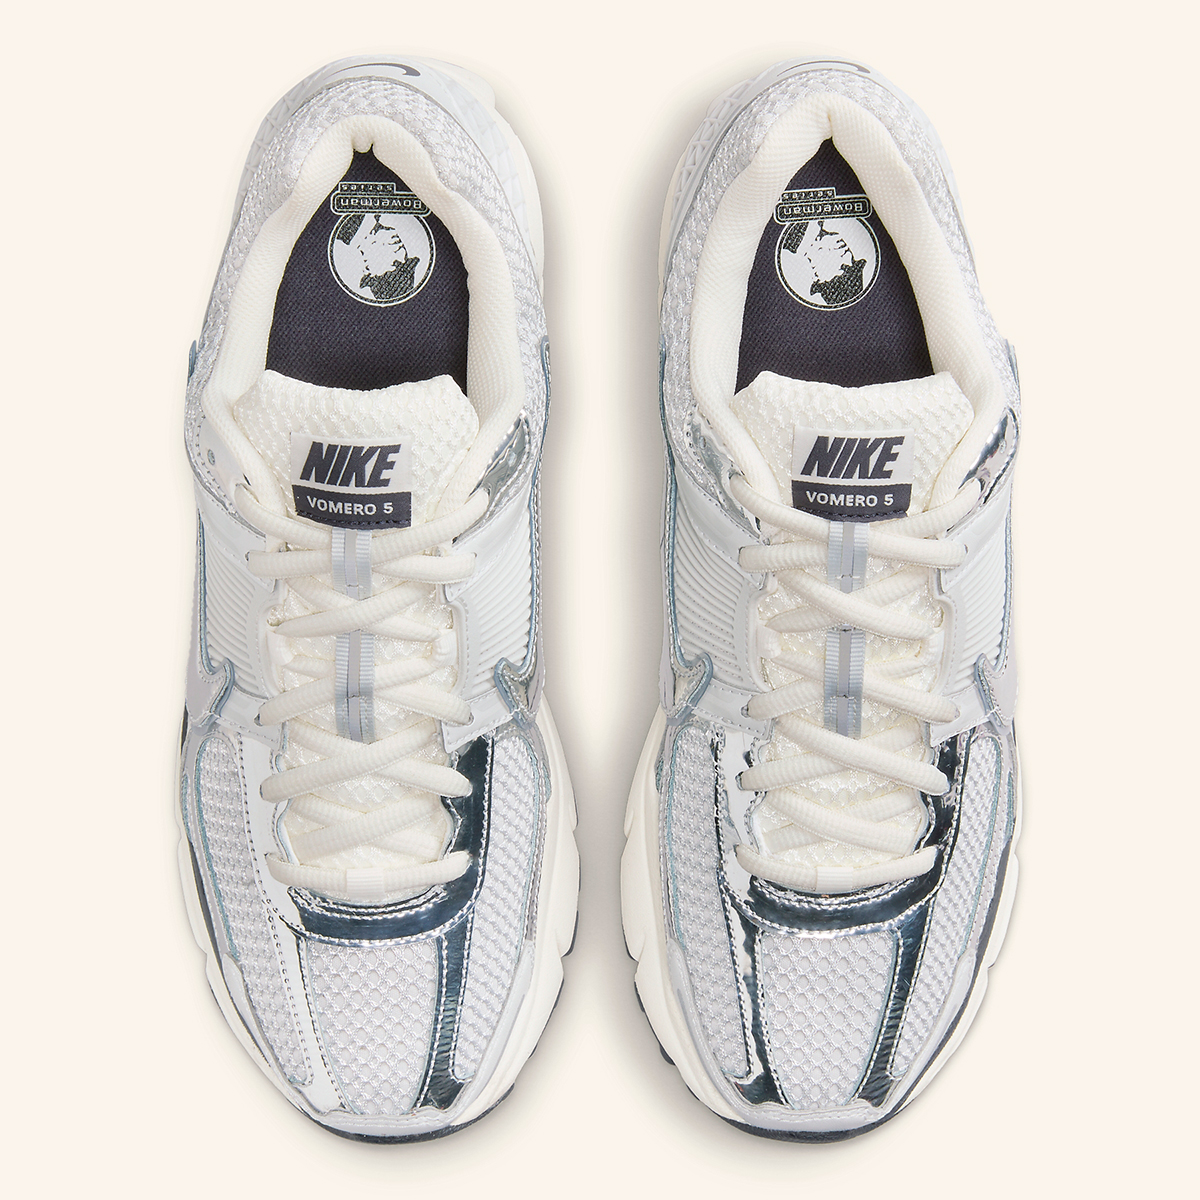 Nike Tall Tech fleece joggingbroek in grijs Summit White Metallic Silver Hj3758 001 3